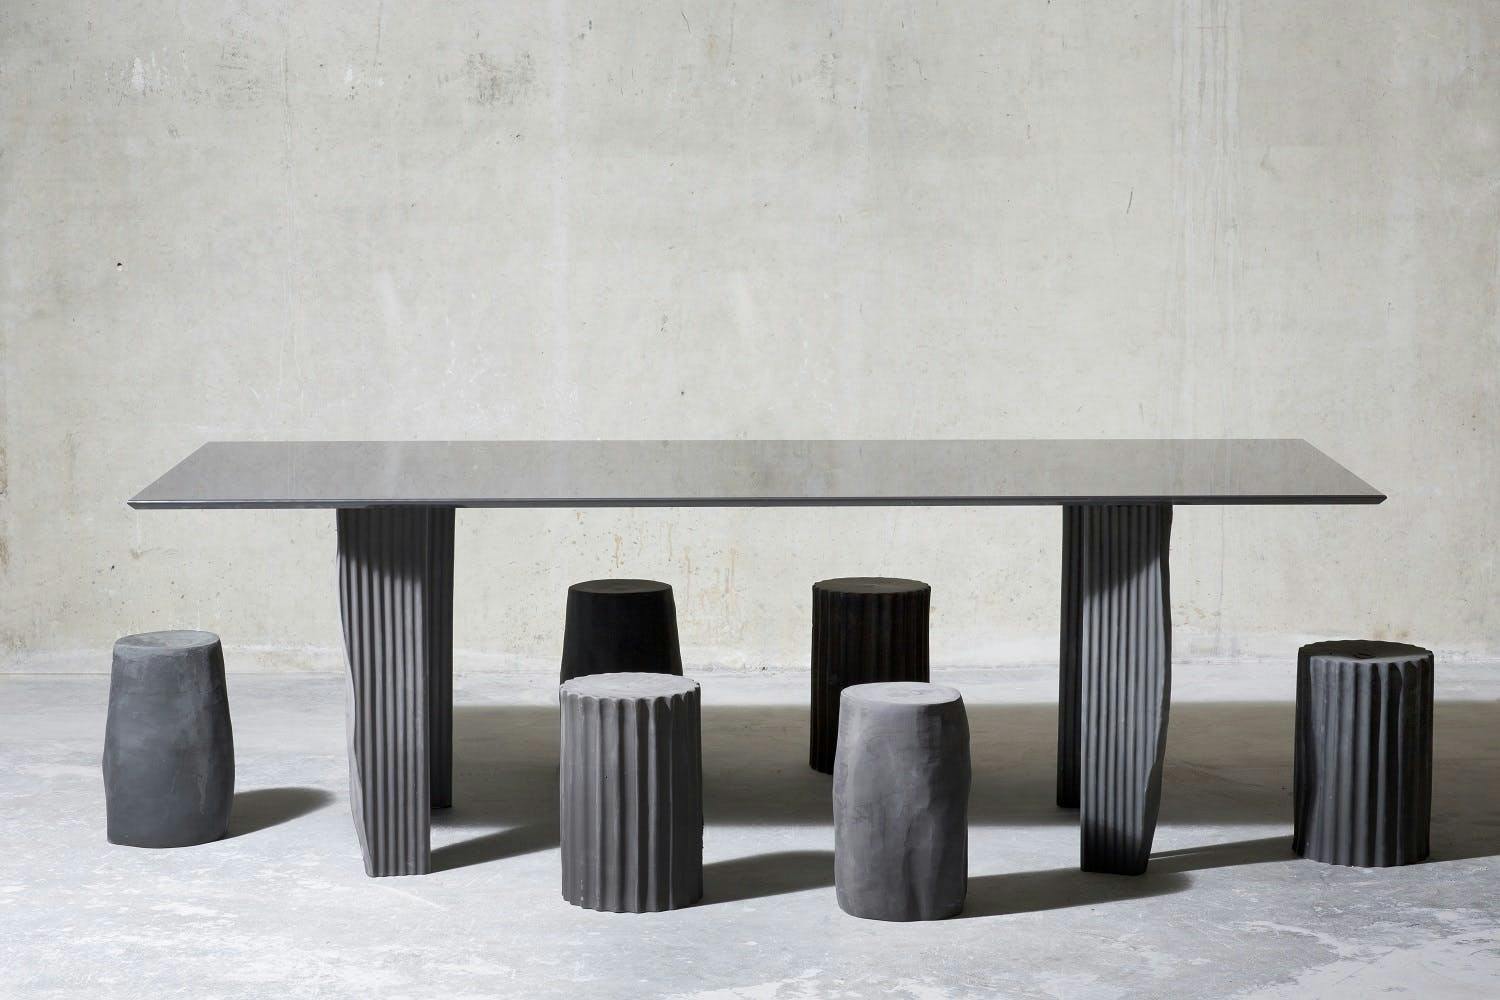 Ein grauer Tisch mit Sitzgelegenheiten aus organische Formen.